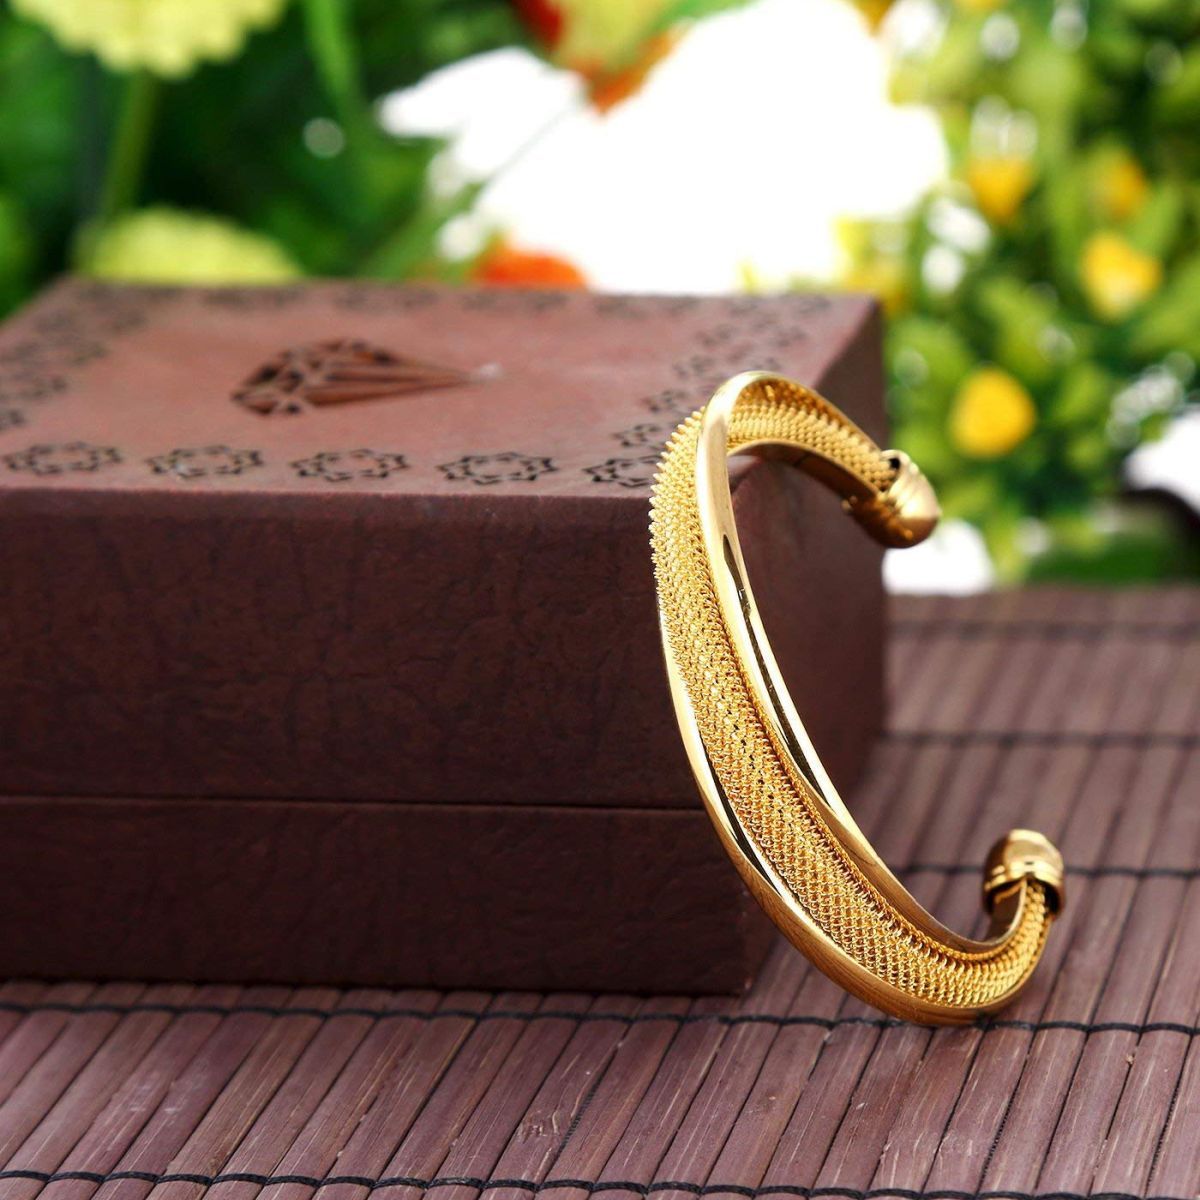 Details more than 74 mens gold bangle bracelet